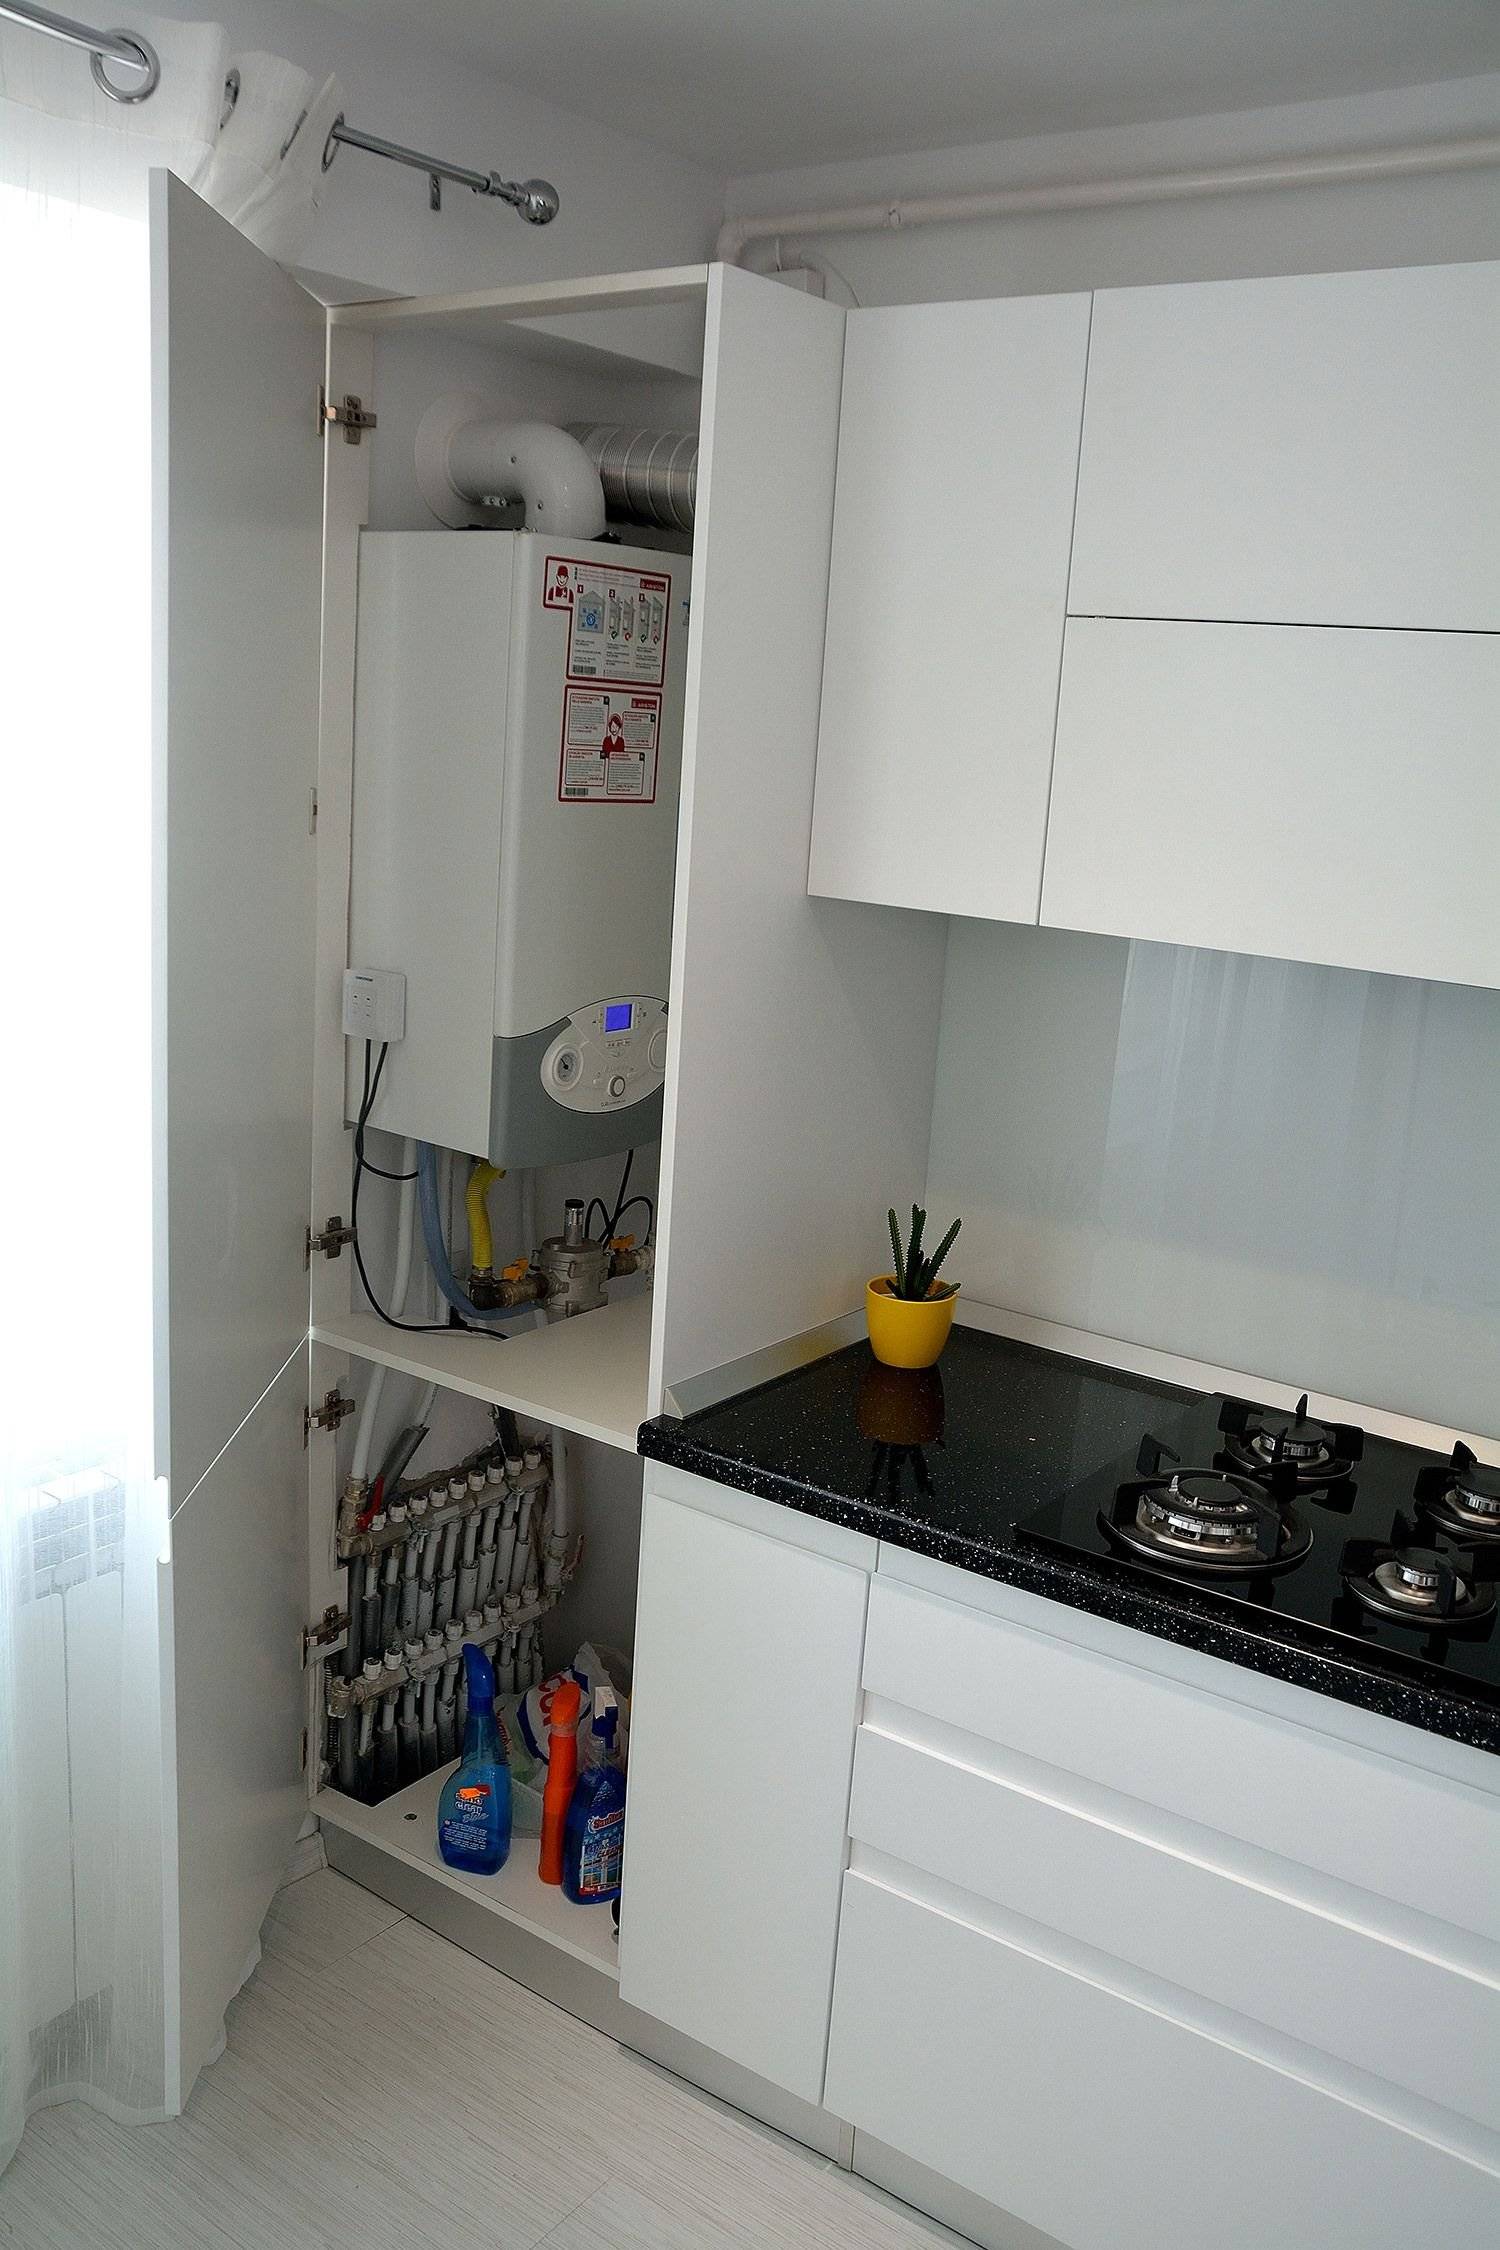 Кухни с газовым котлом: с газовой колонкой, с котлом отопления, дизайн, фото